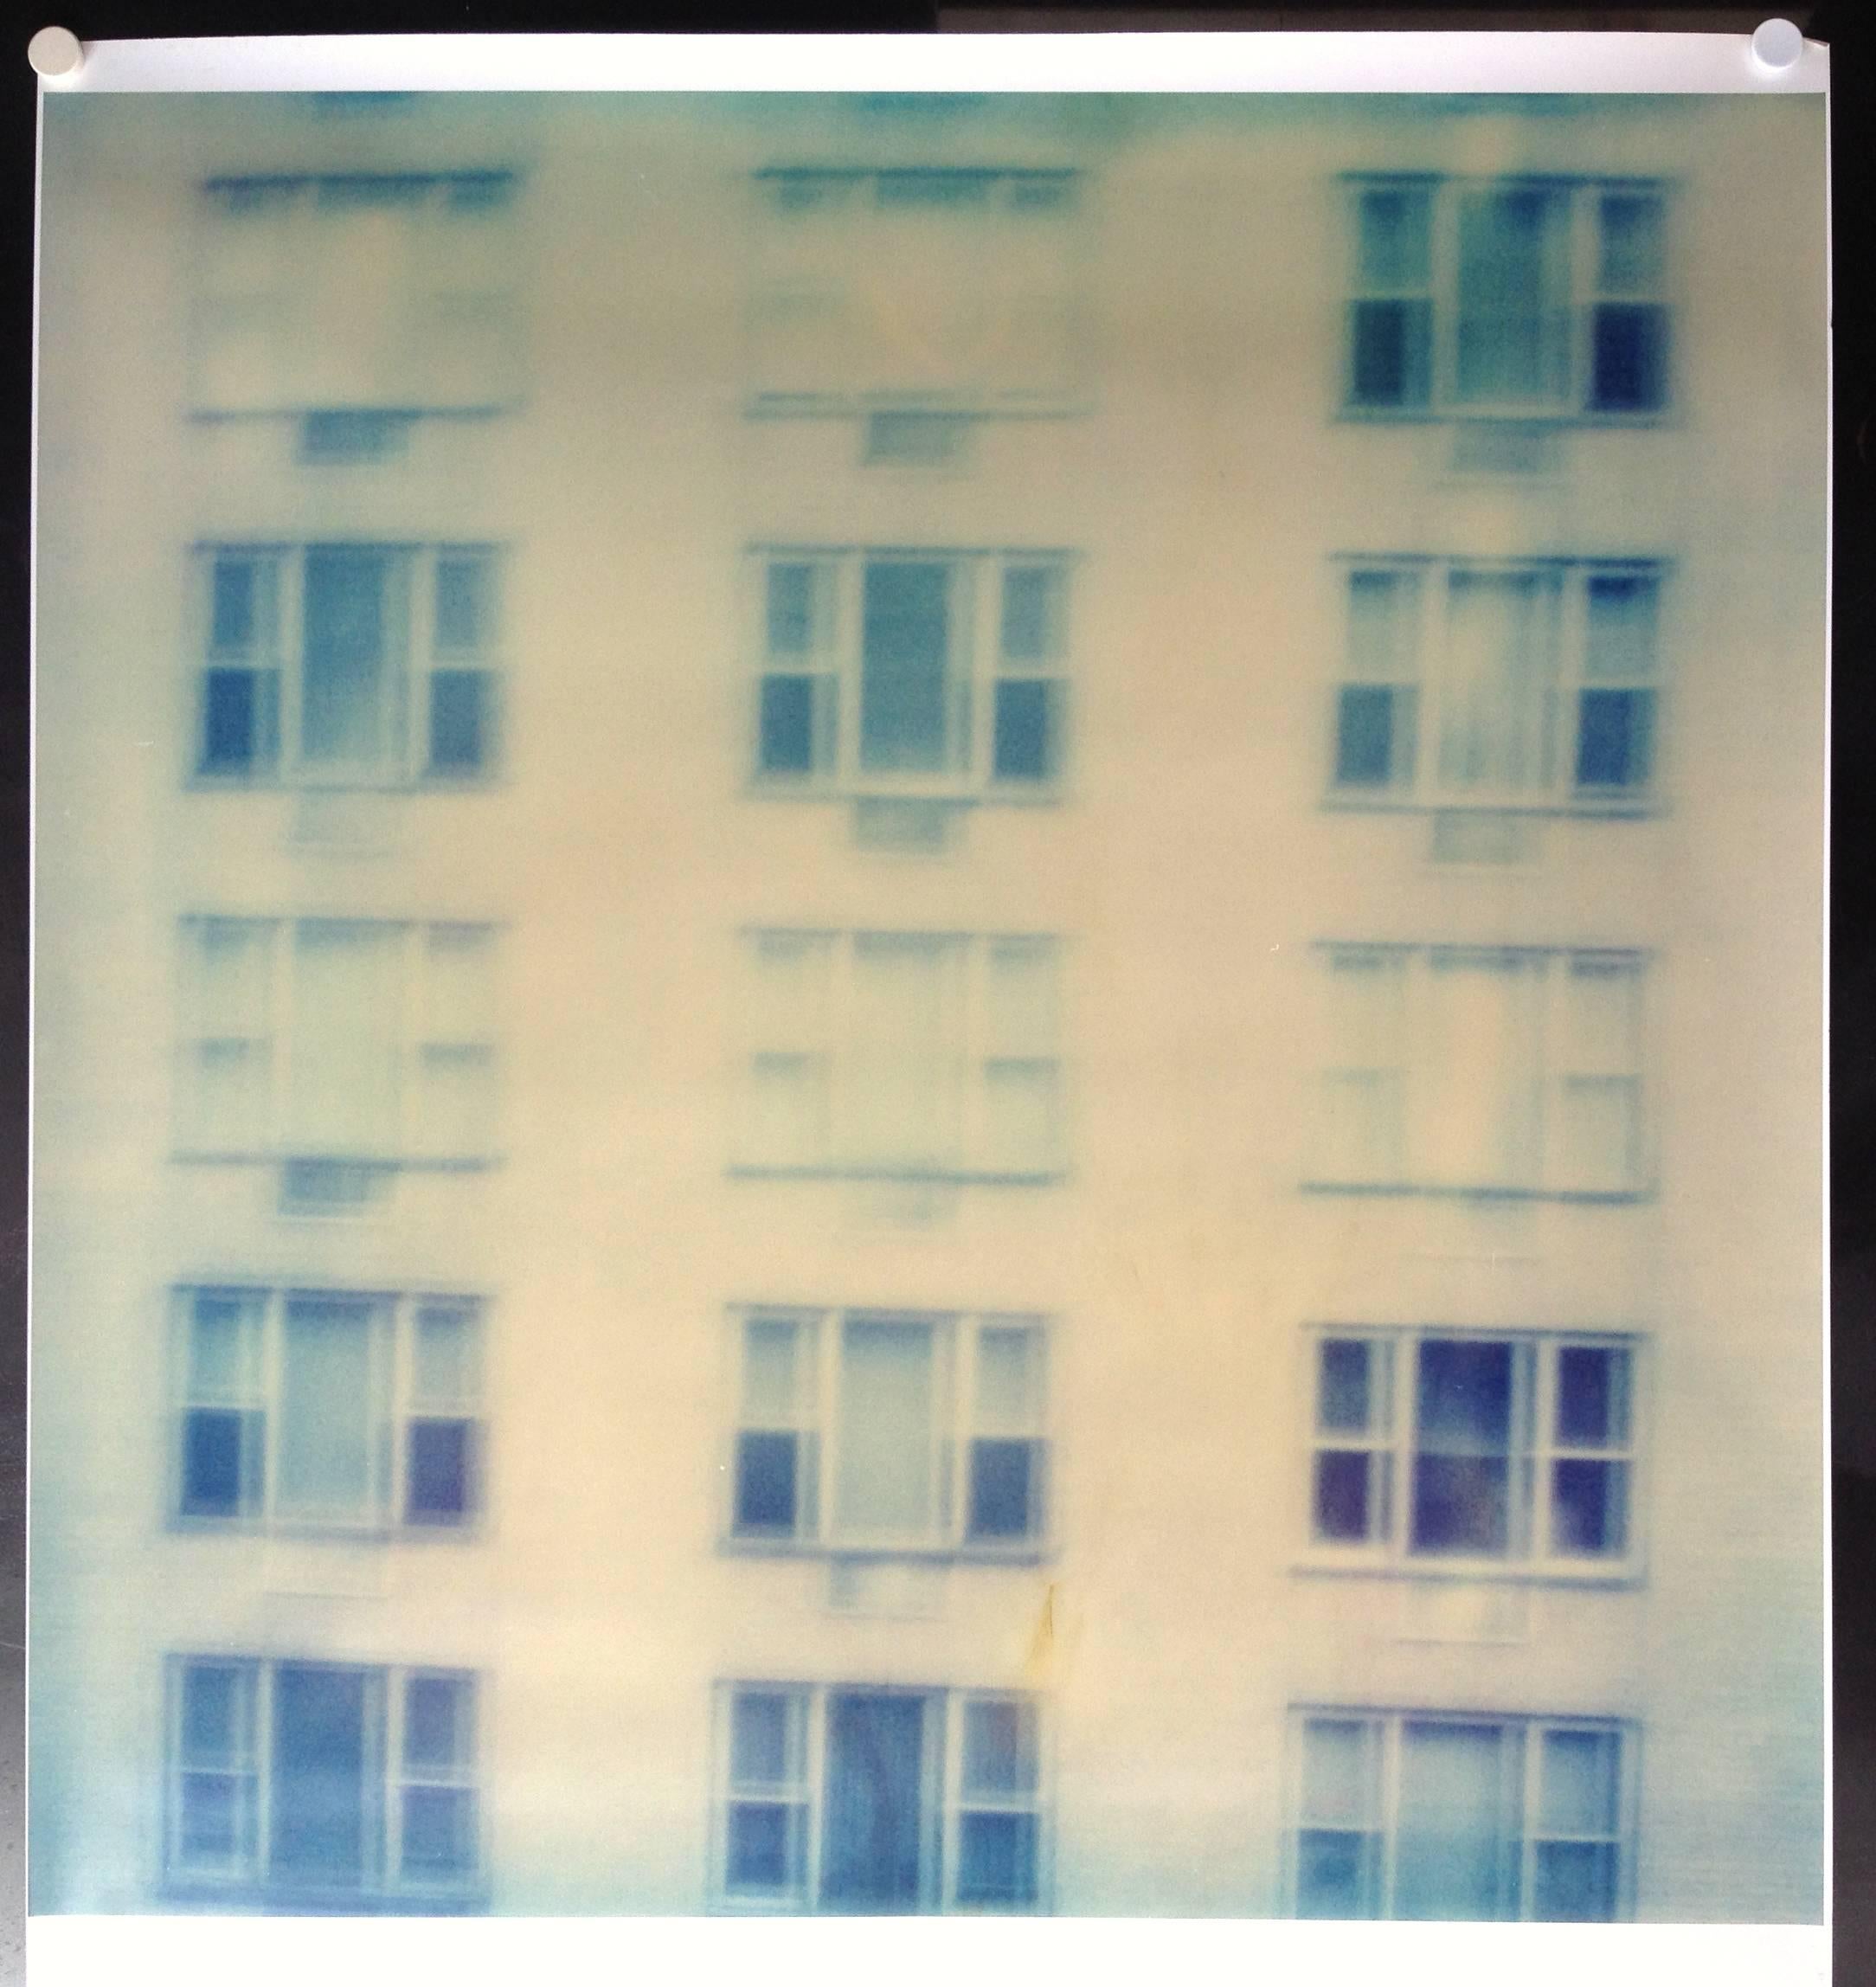 Across (Strange Love) – analog, basiert auf dem Original Polaroid – Photograph von Stefanie Schneider